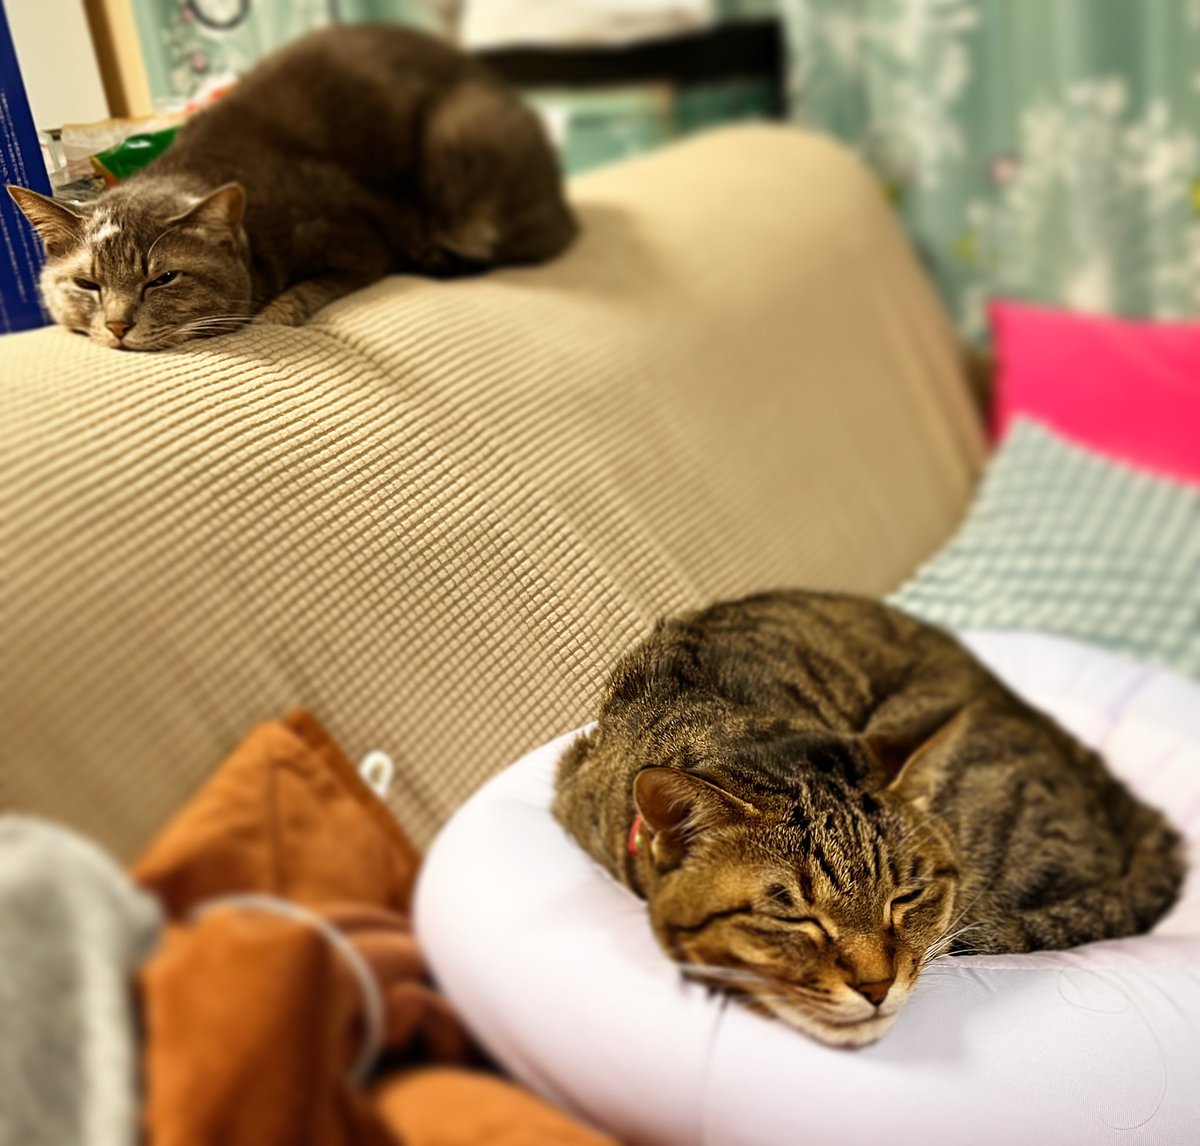 流石兄妹。同じ顔して寝てる
#cats #sleepingcars #sameface  #兄妹猫 #同じ顔